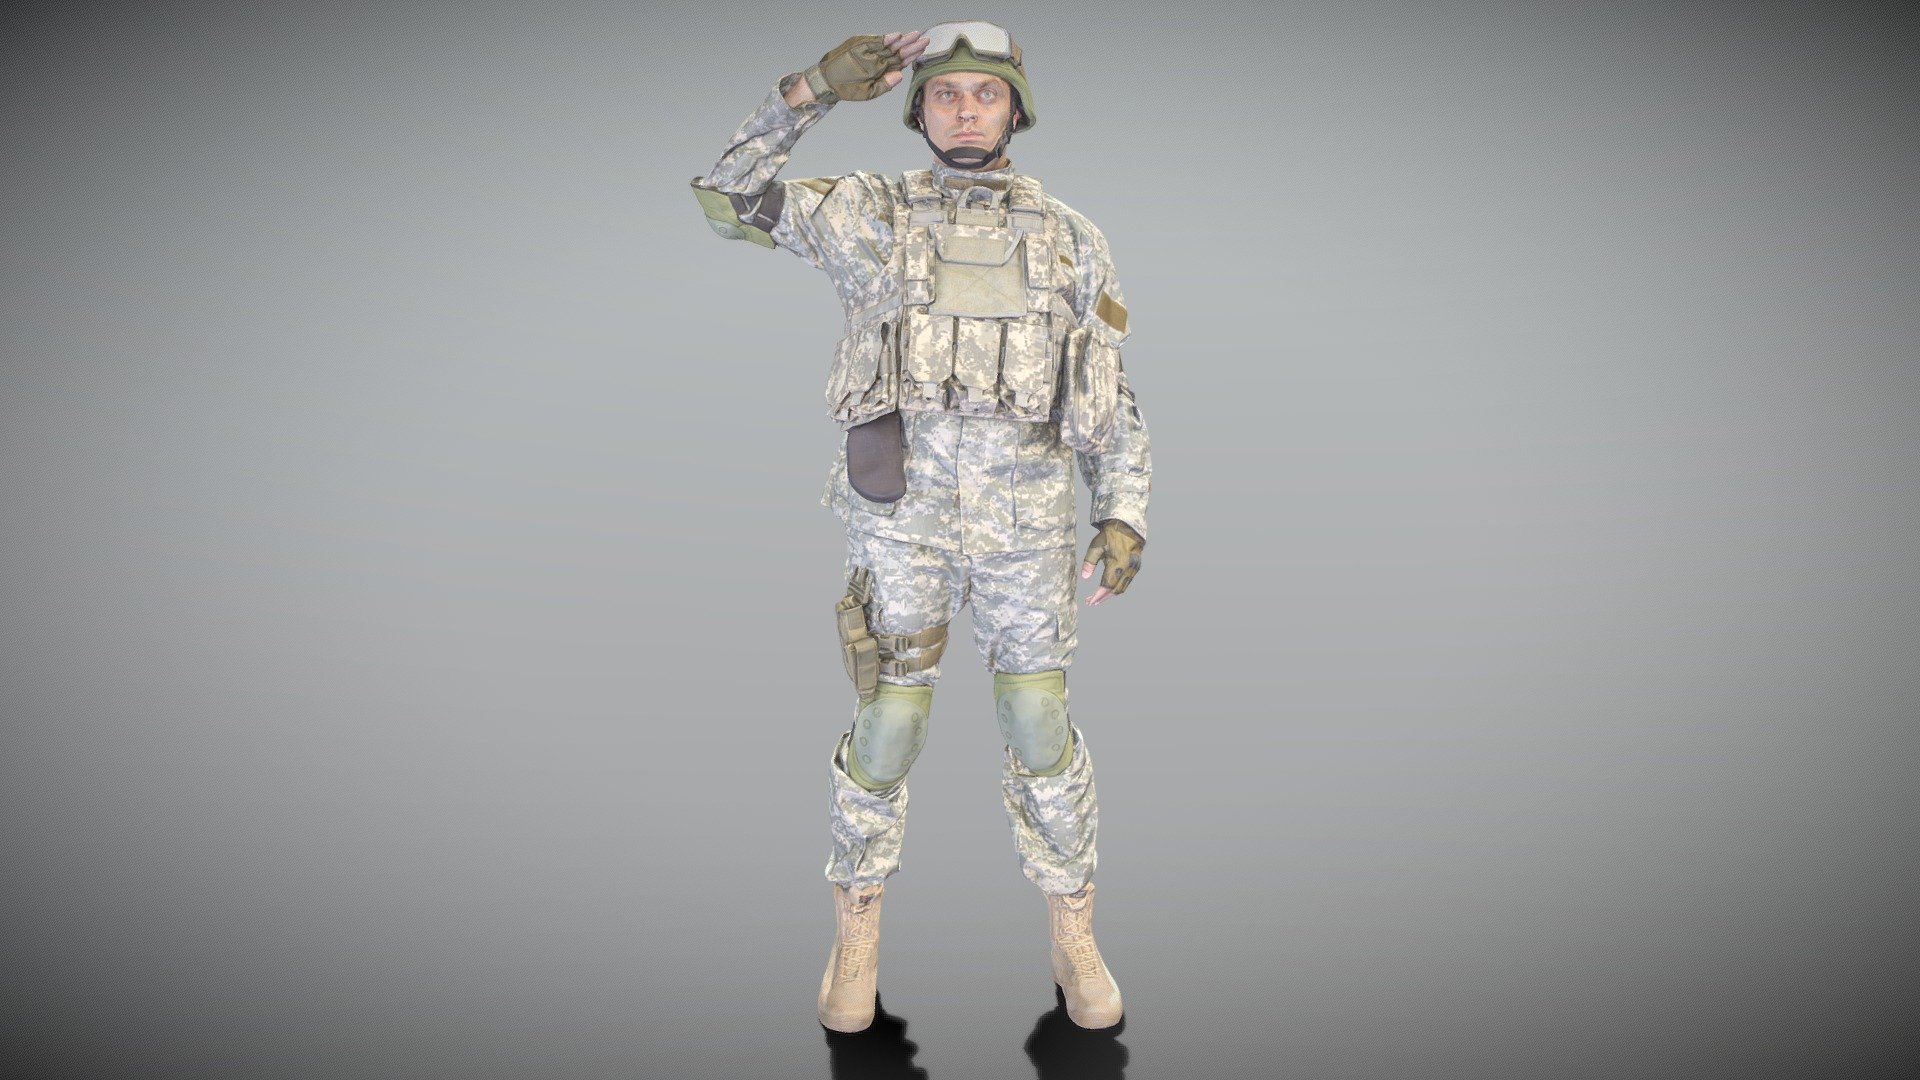 blender 3d soldier model download